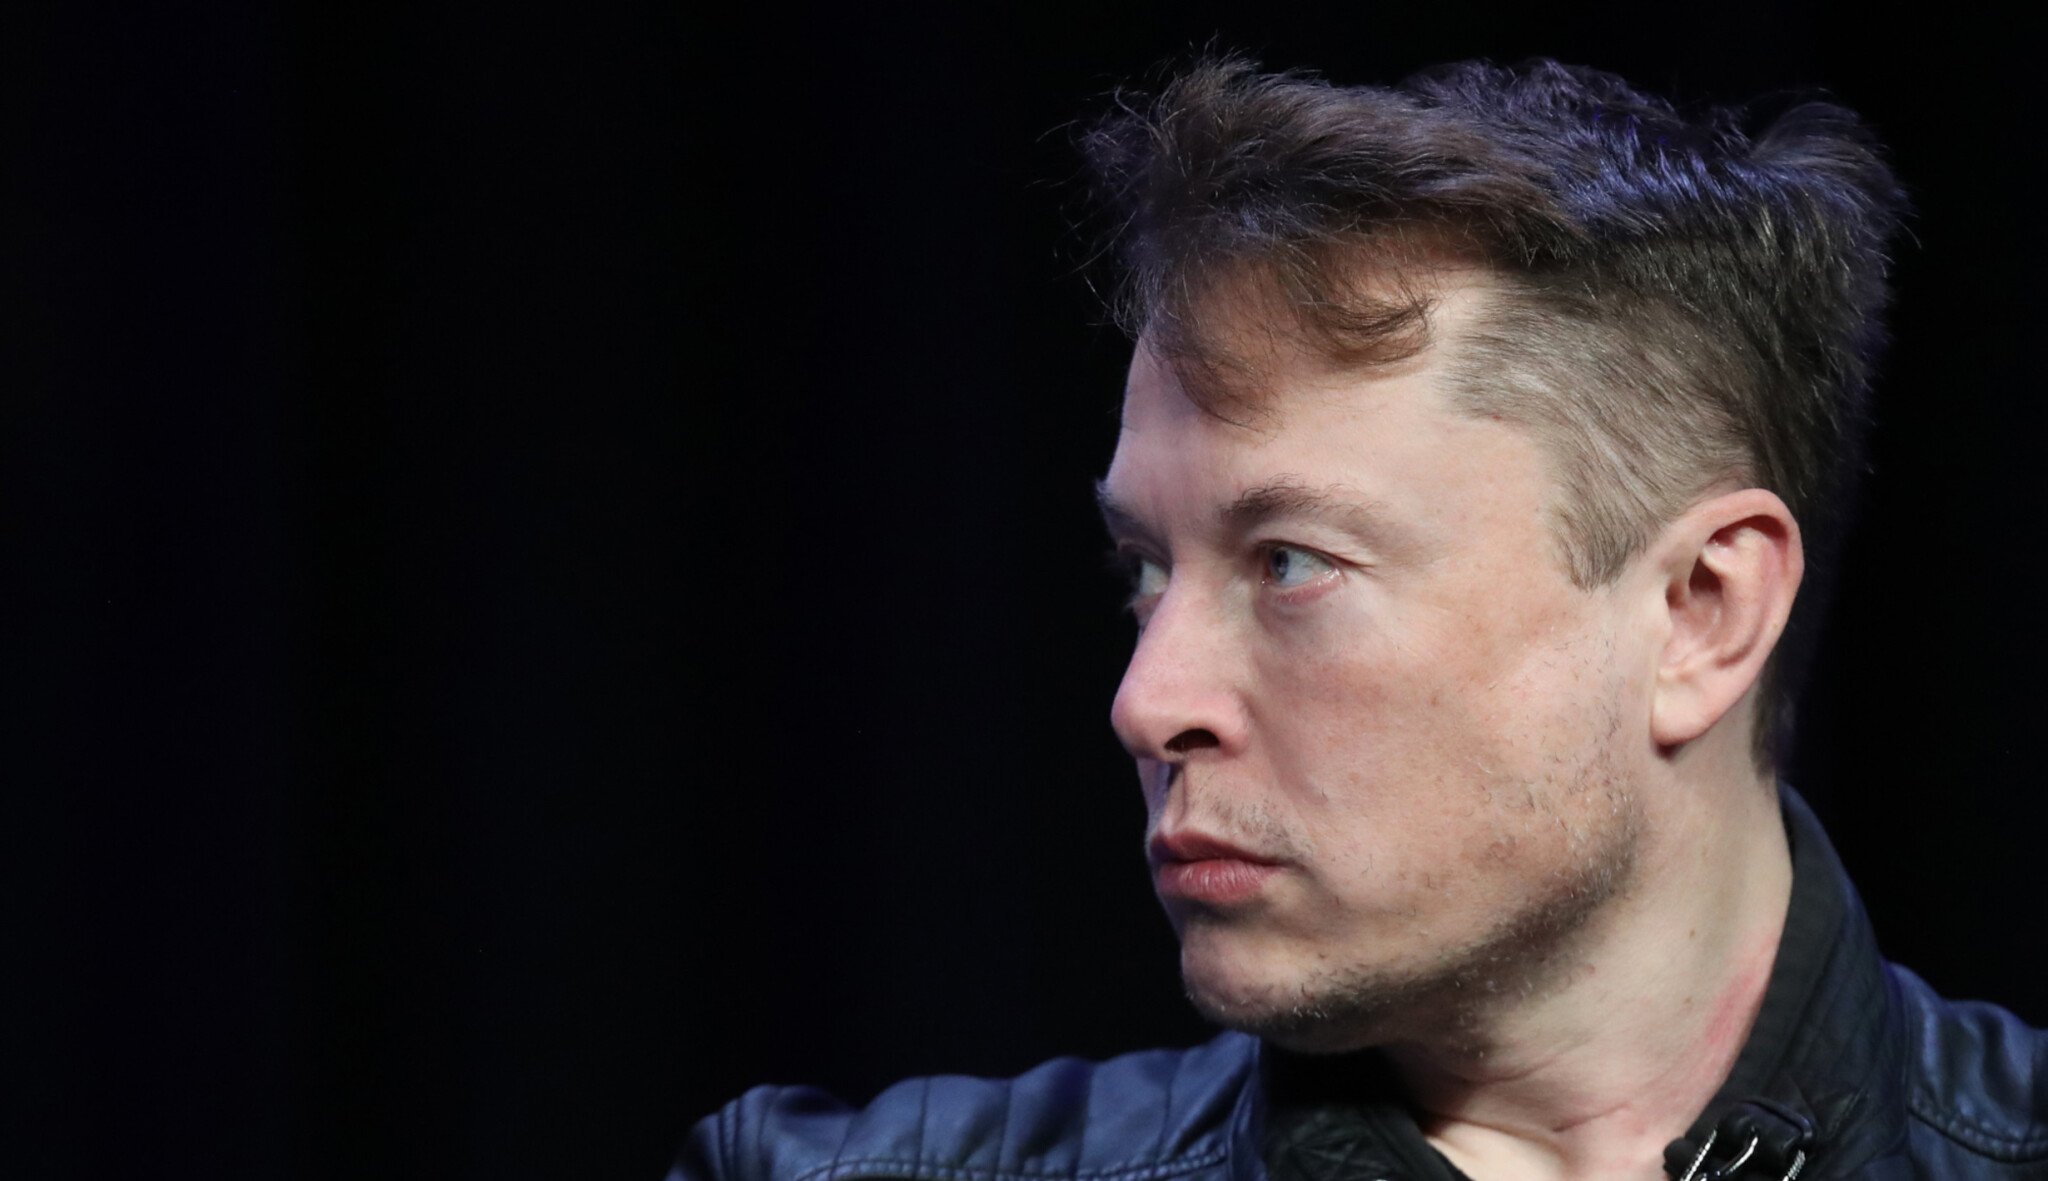 Chcete pracovat pro Elona Muska? Tuhle otázku pokládá u každého pohovoru